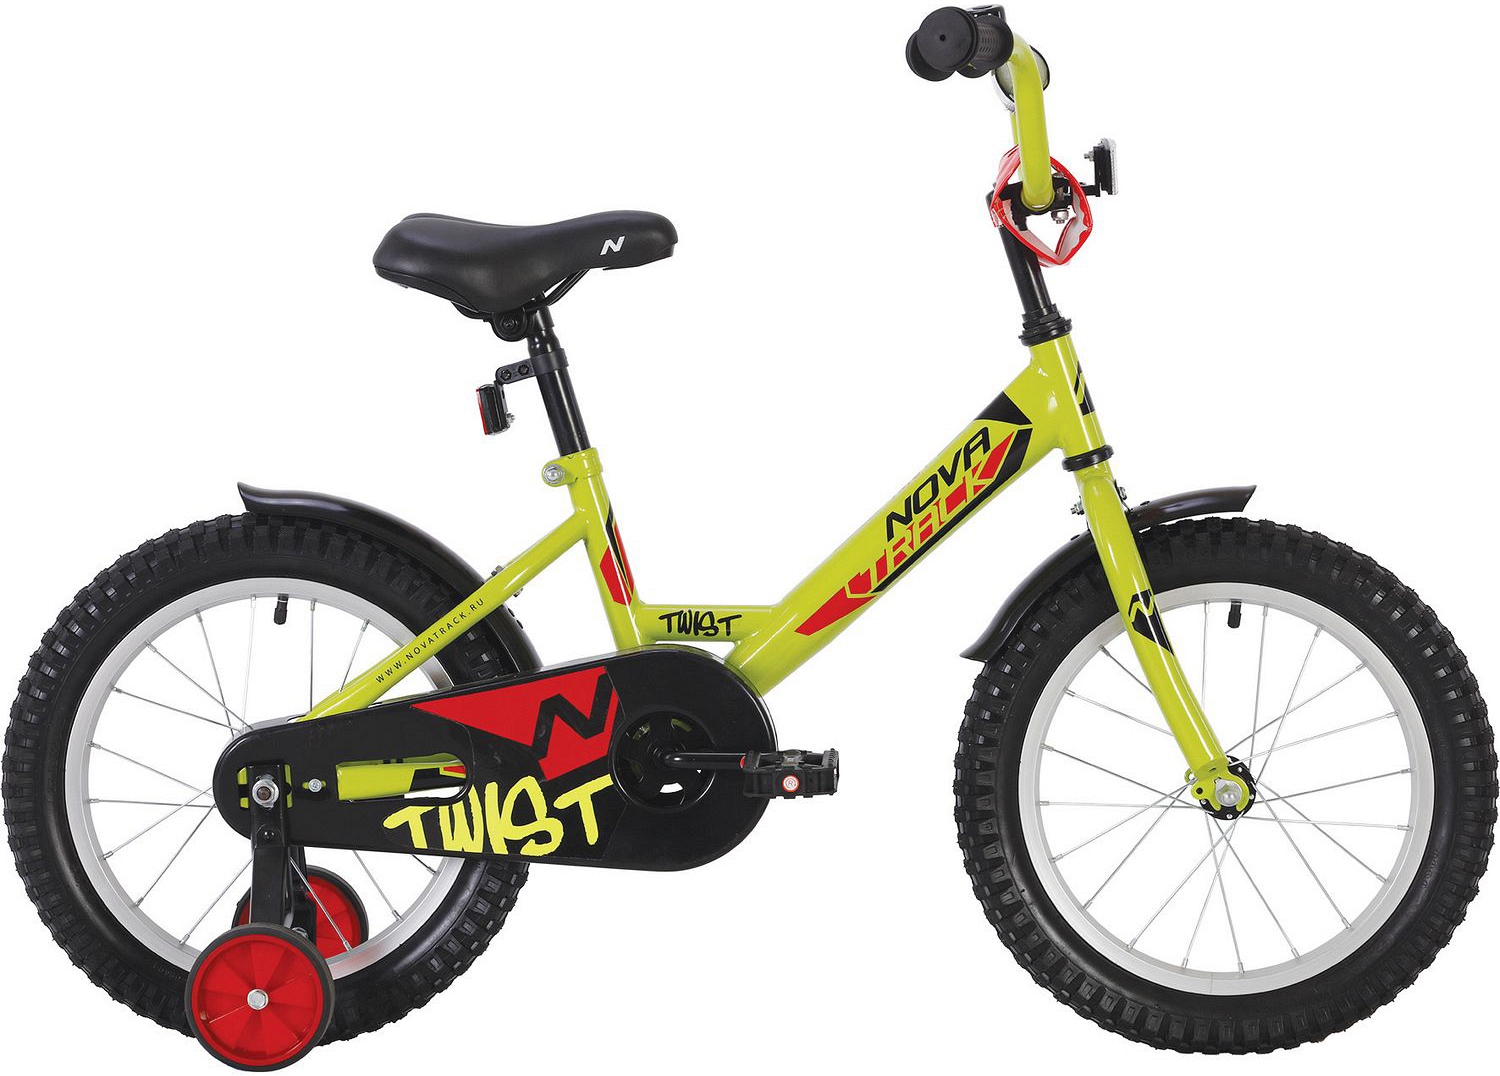  Отзывы о Детском велосипеде Novatrack Twist 16 2020